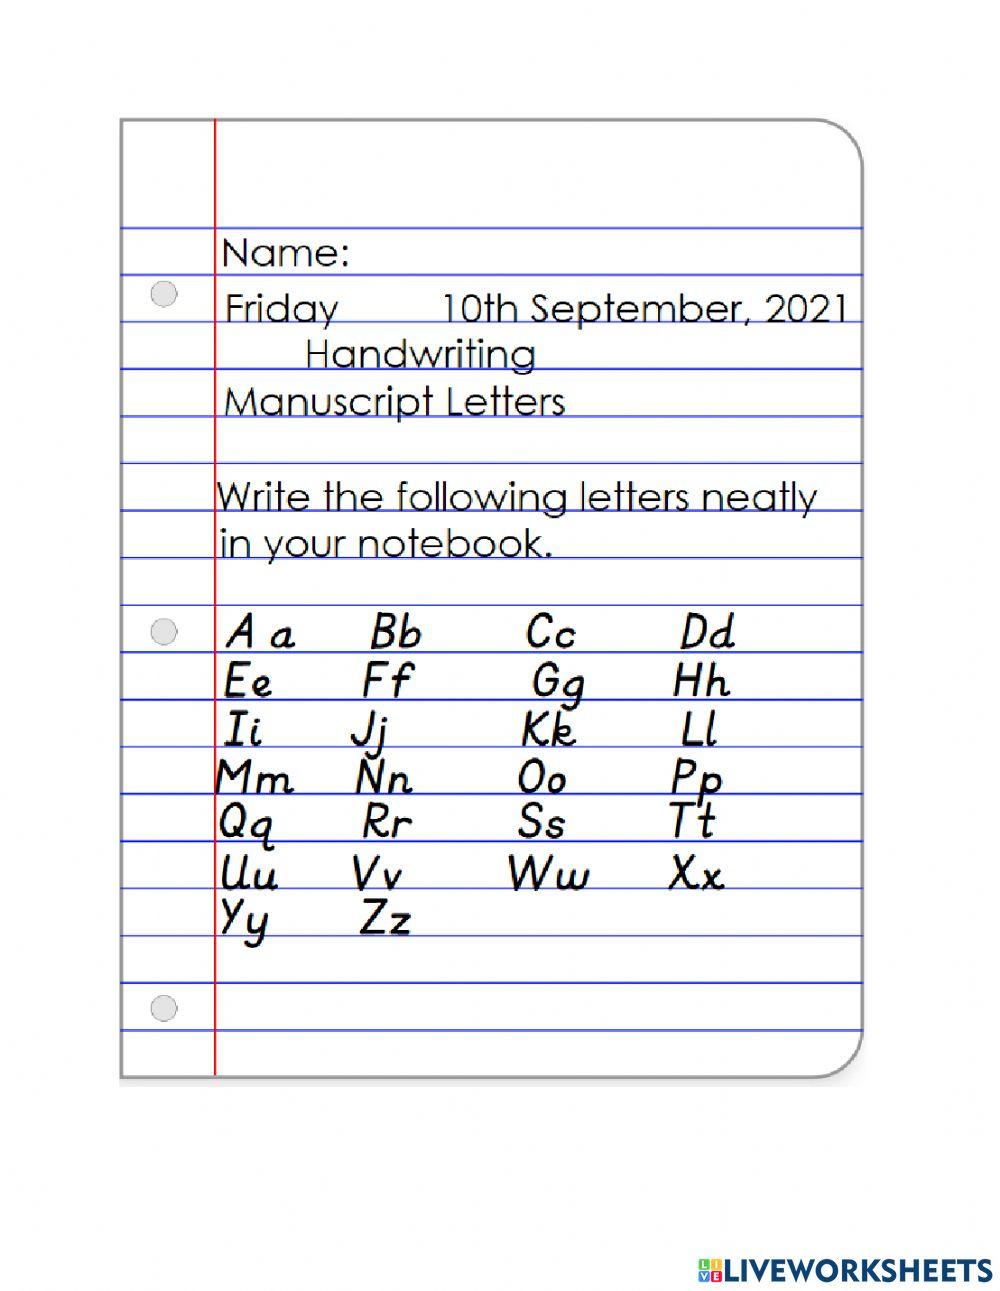 Handwriting Manuscript Letters